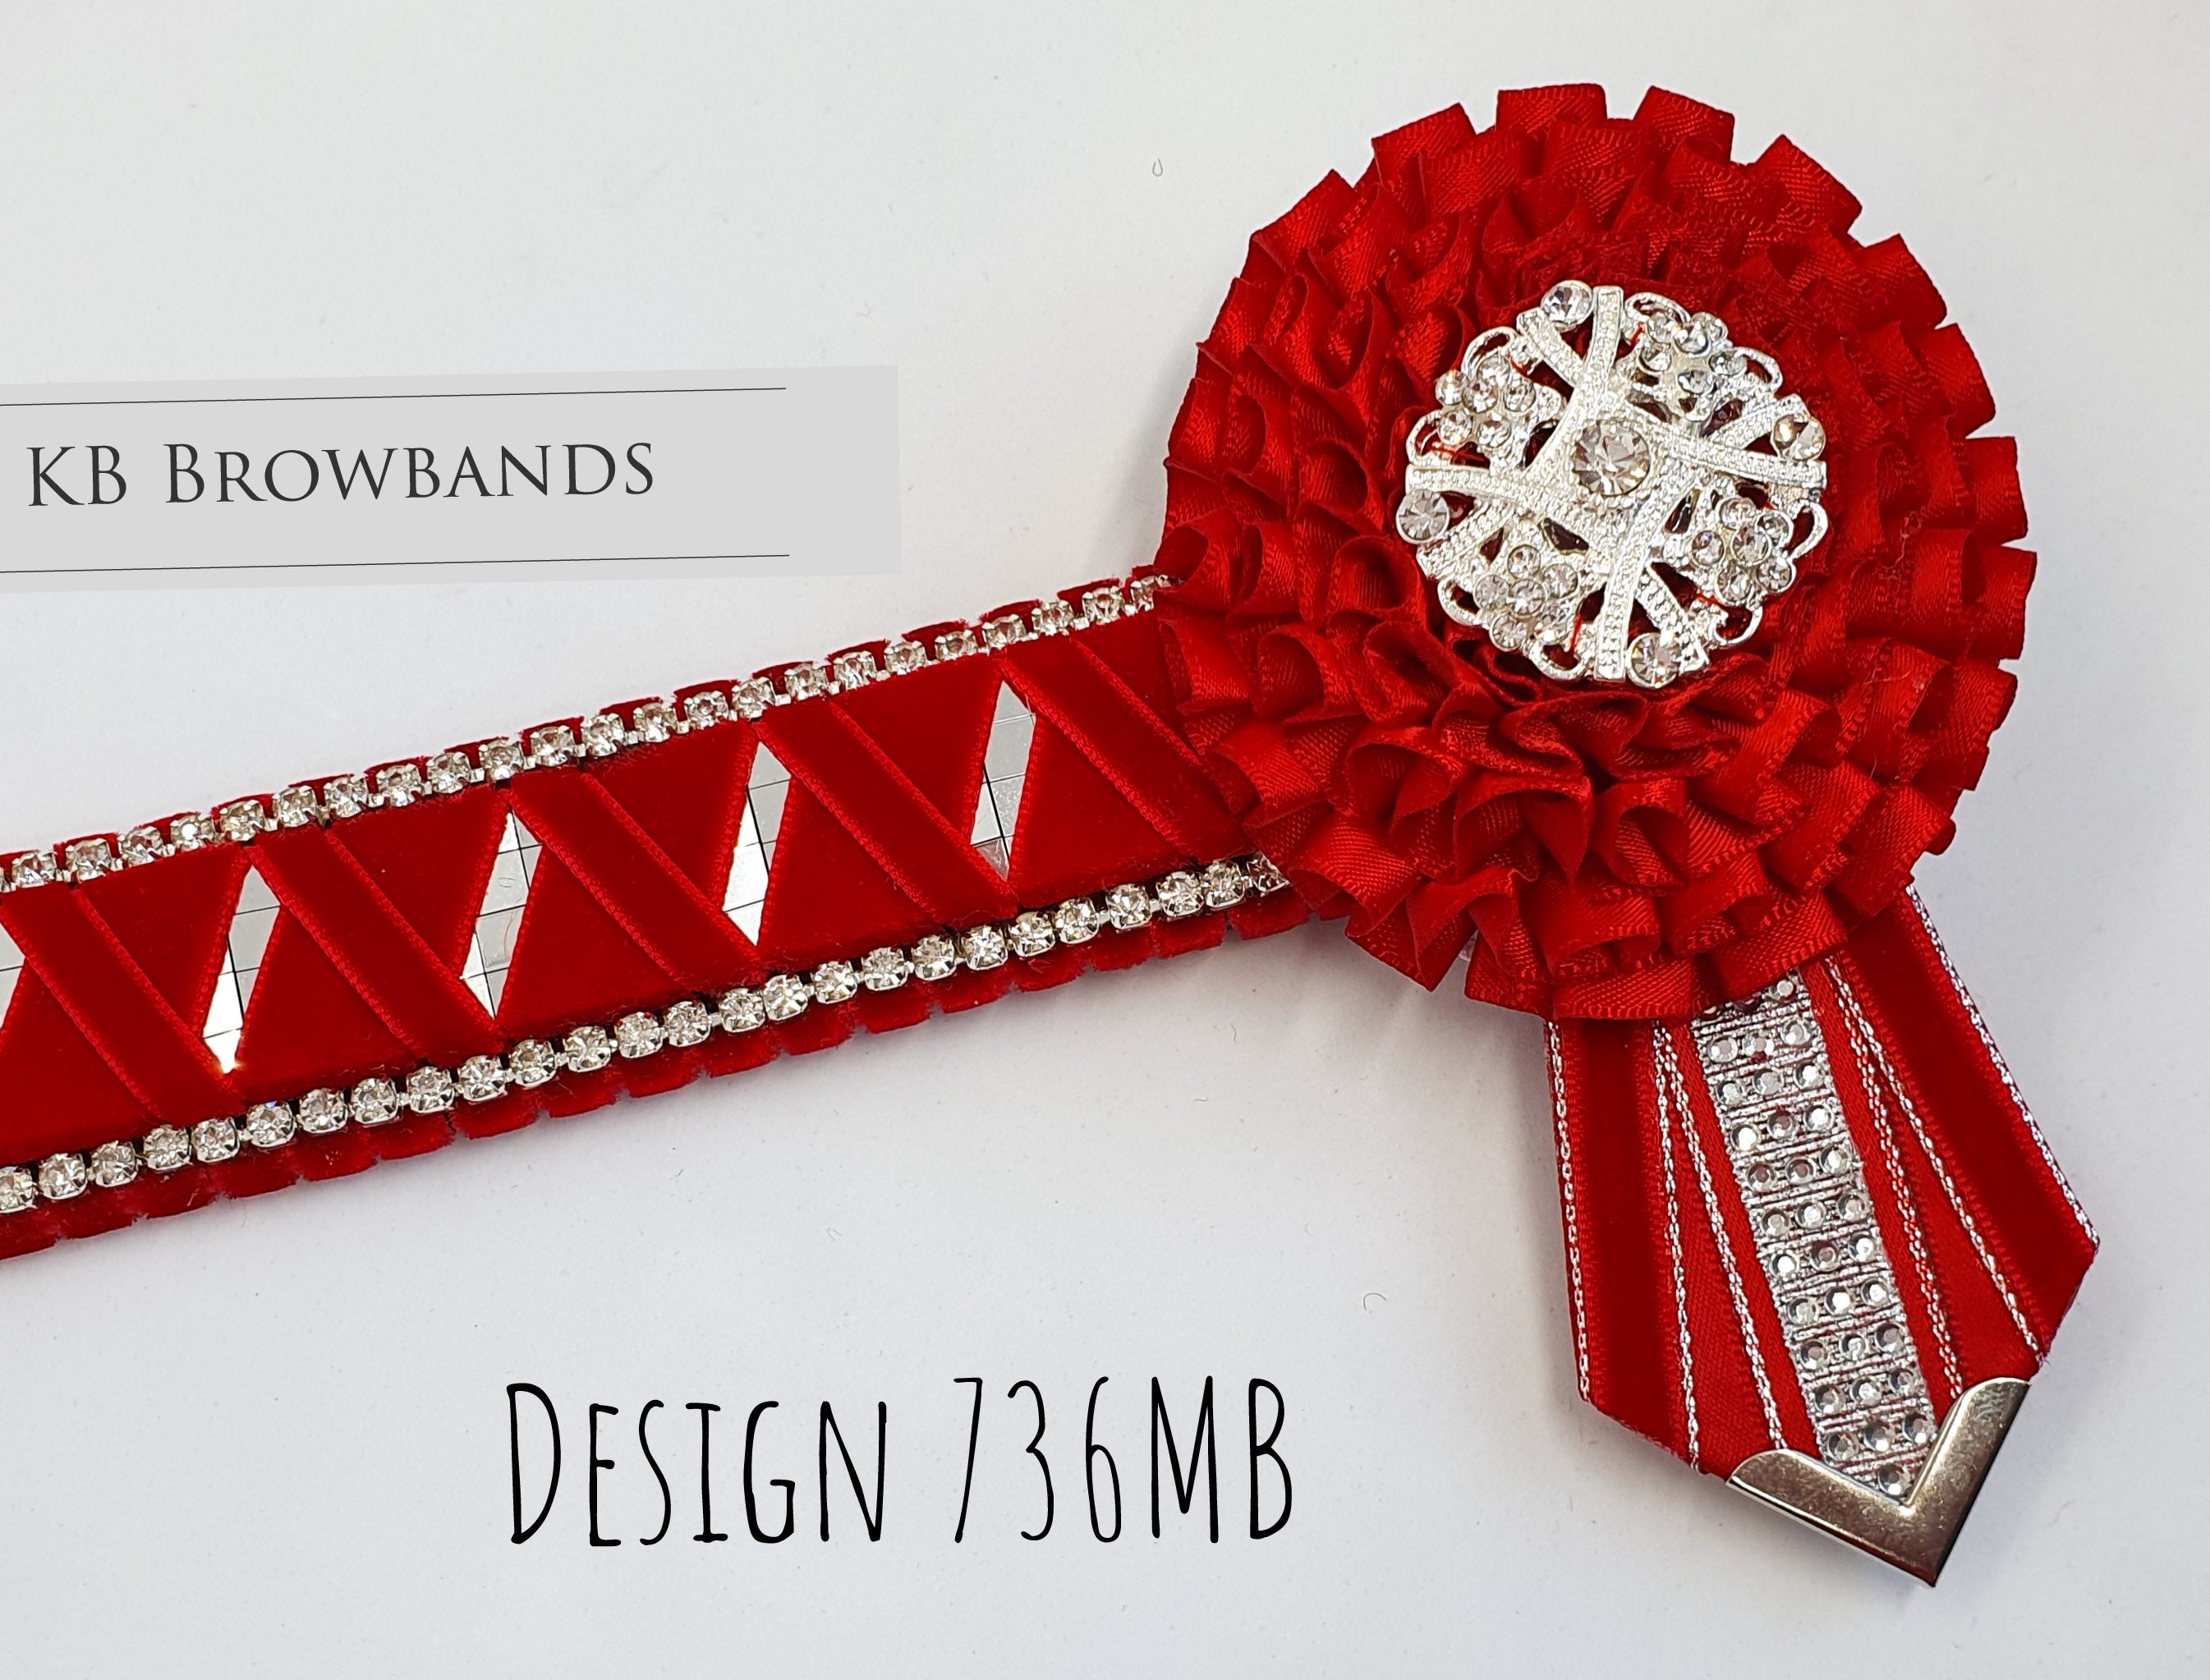 KB Browbands Design 736MB